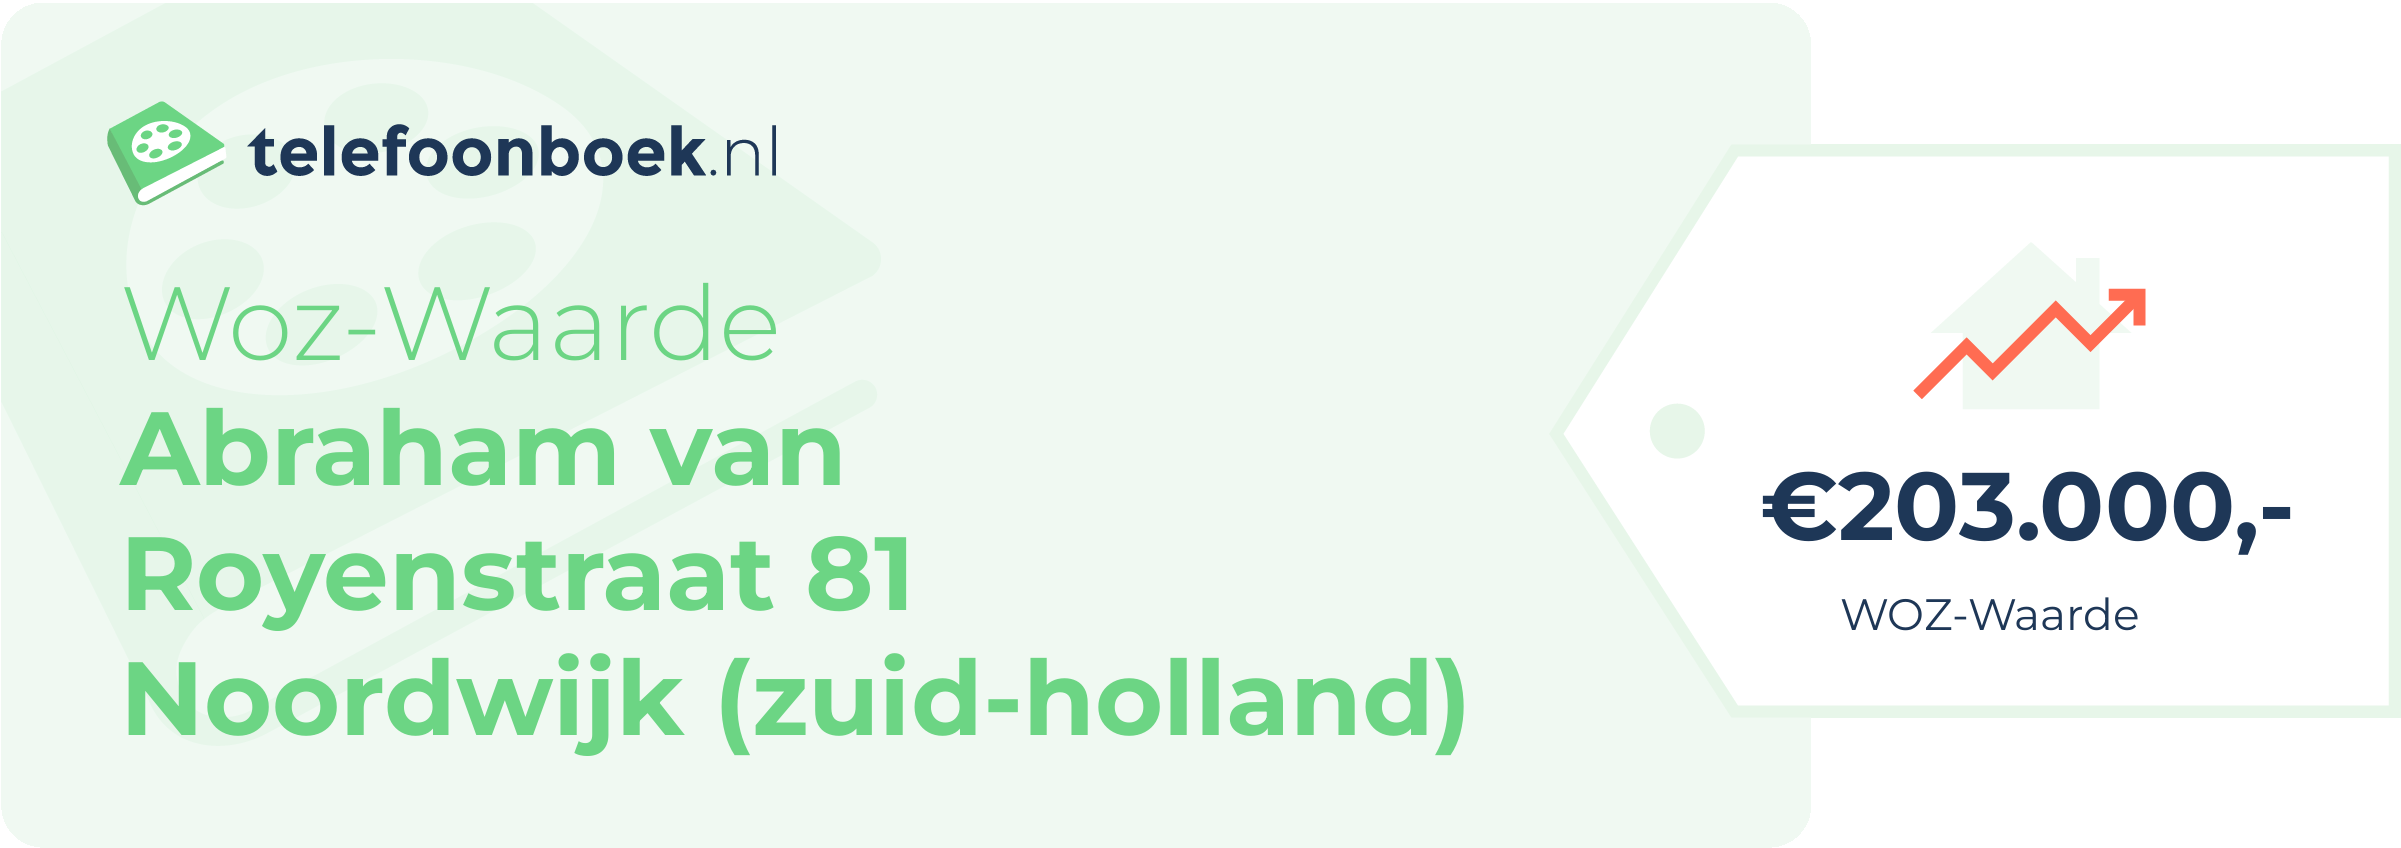 WOZ-waarde Abraham Van Royenstraat 81 Noordwijk (Zuid-Holland)